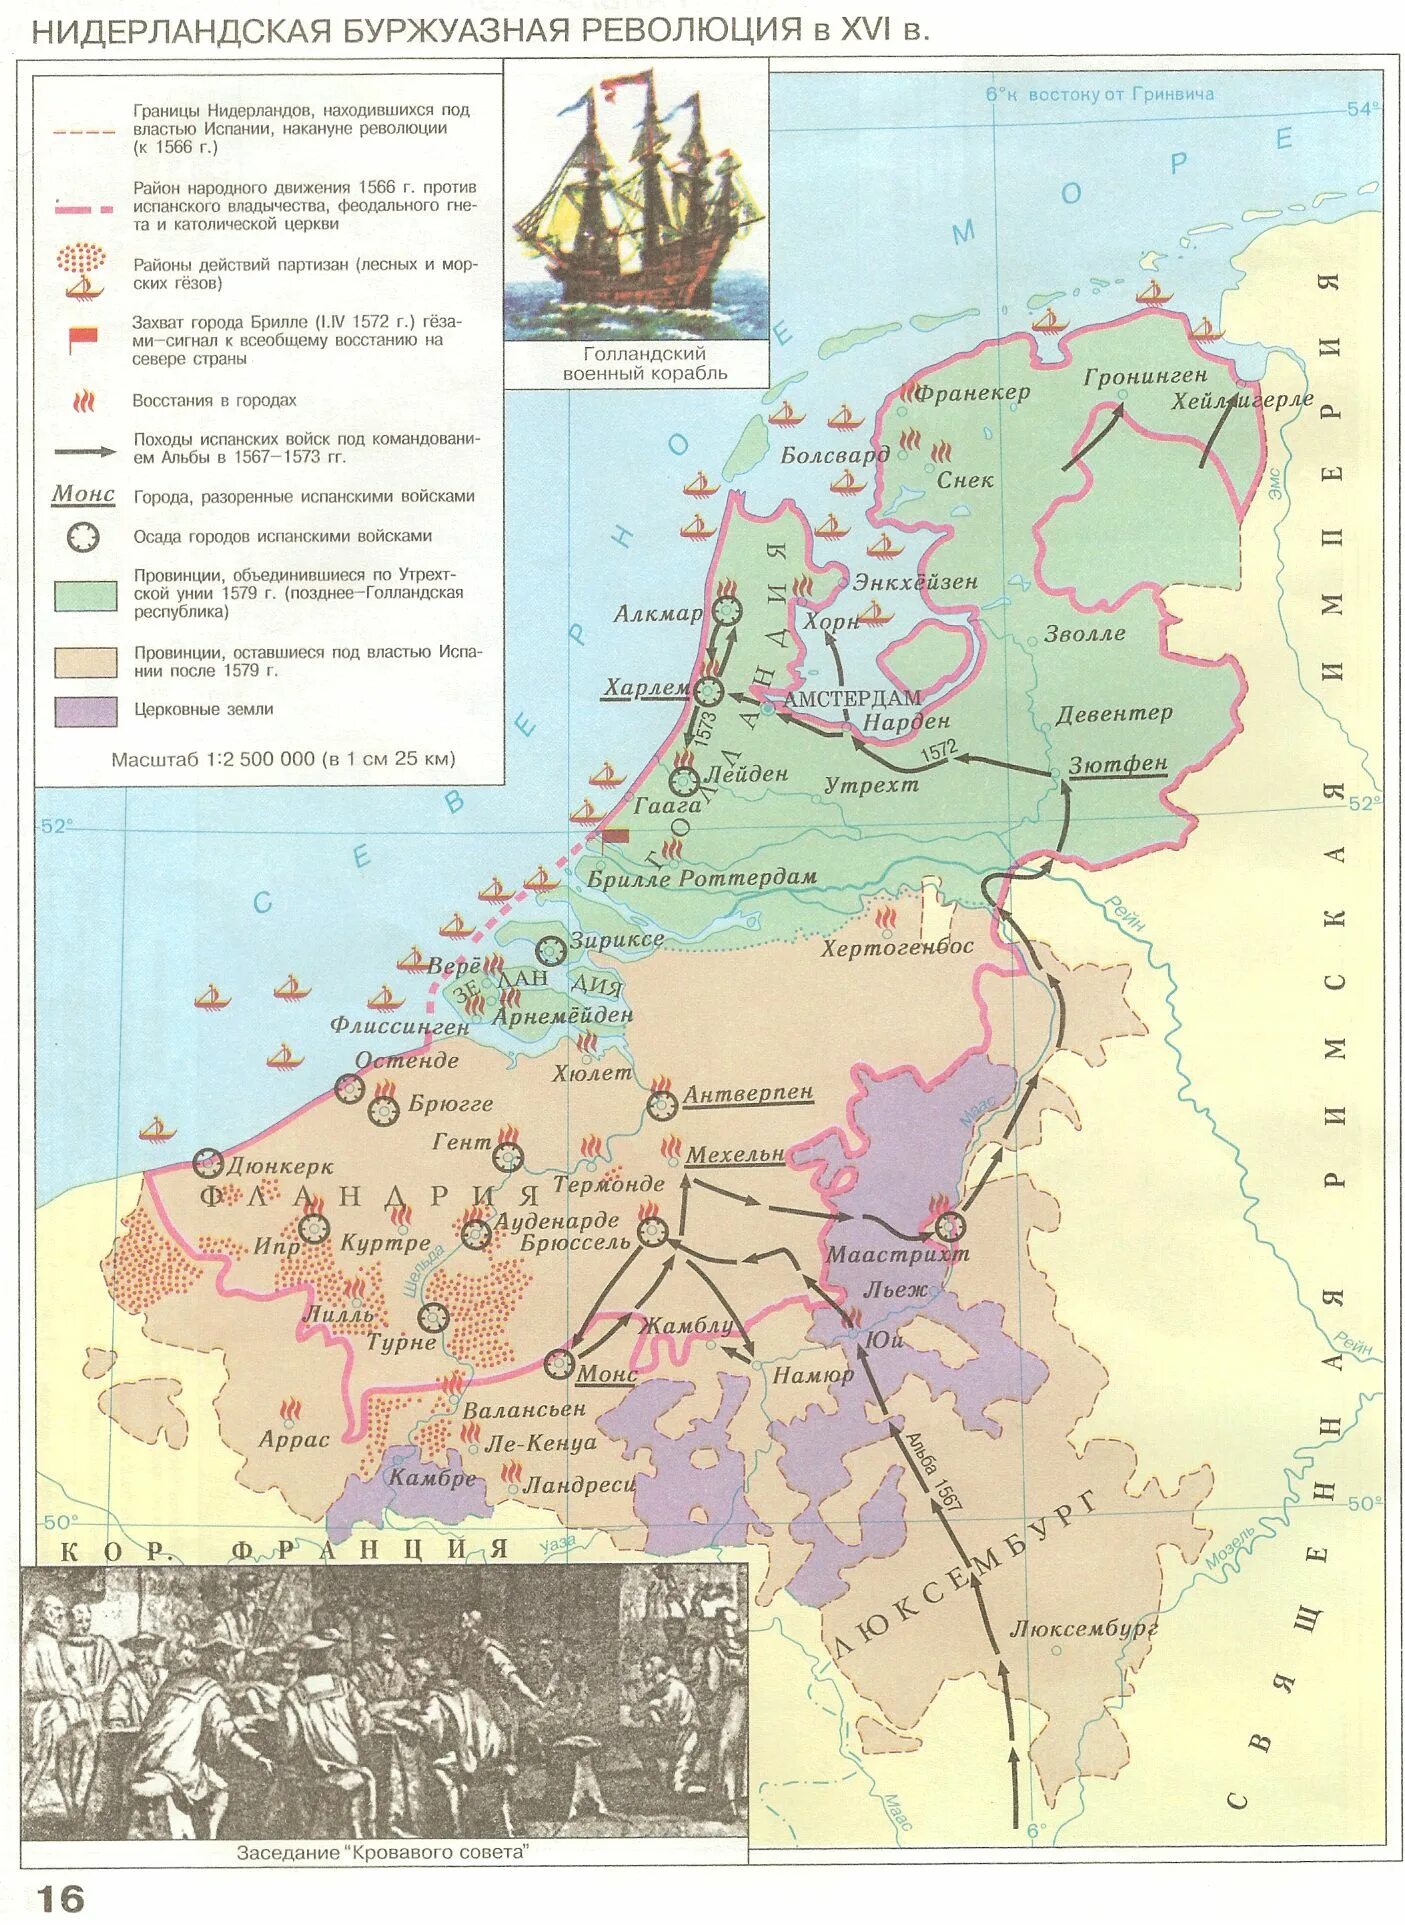 Нидерландская буржуазная революция. Нидерландская революция карта. Голландская революция карта. Голландская буржуазная революция 1566-1579 карта. Нидерландская буржуазная